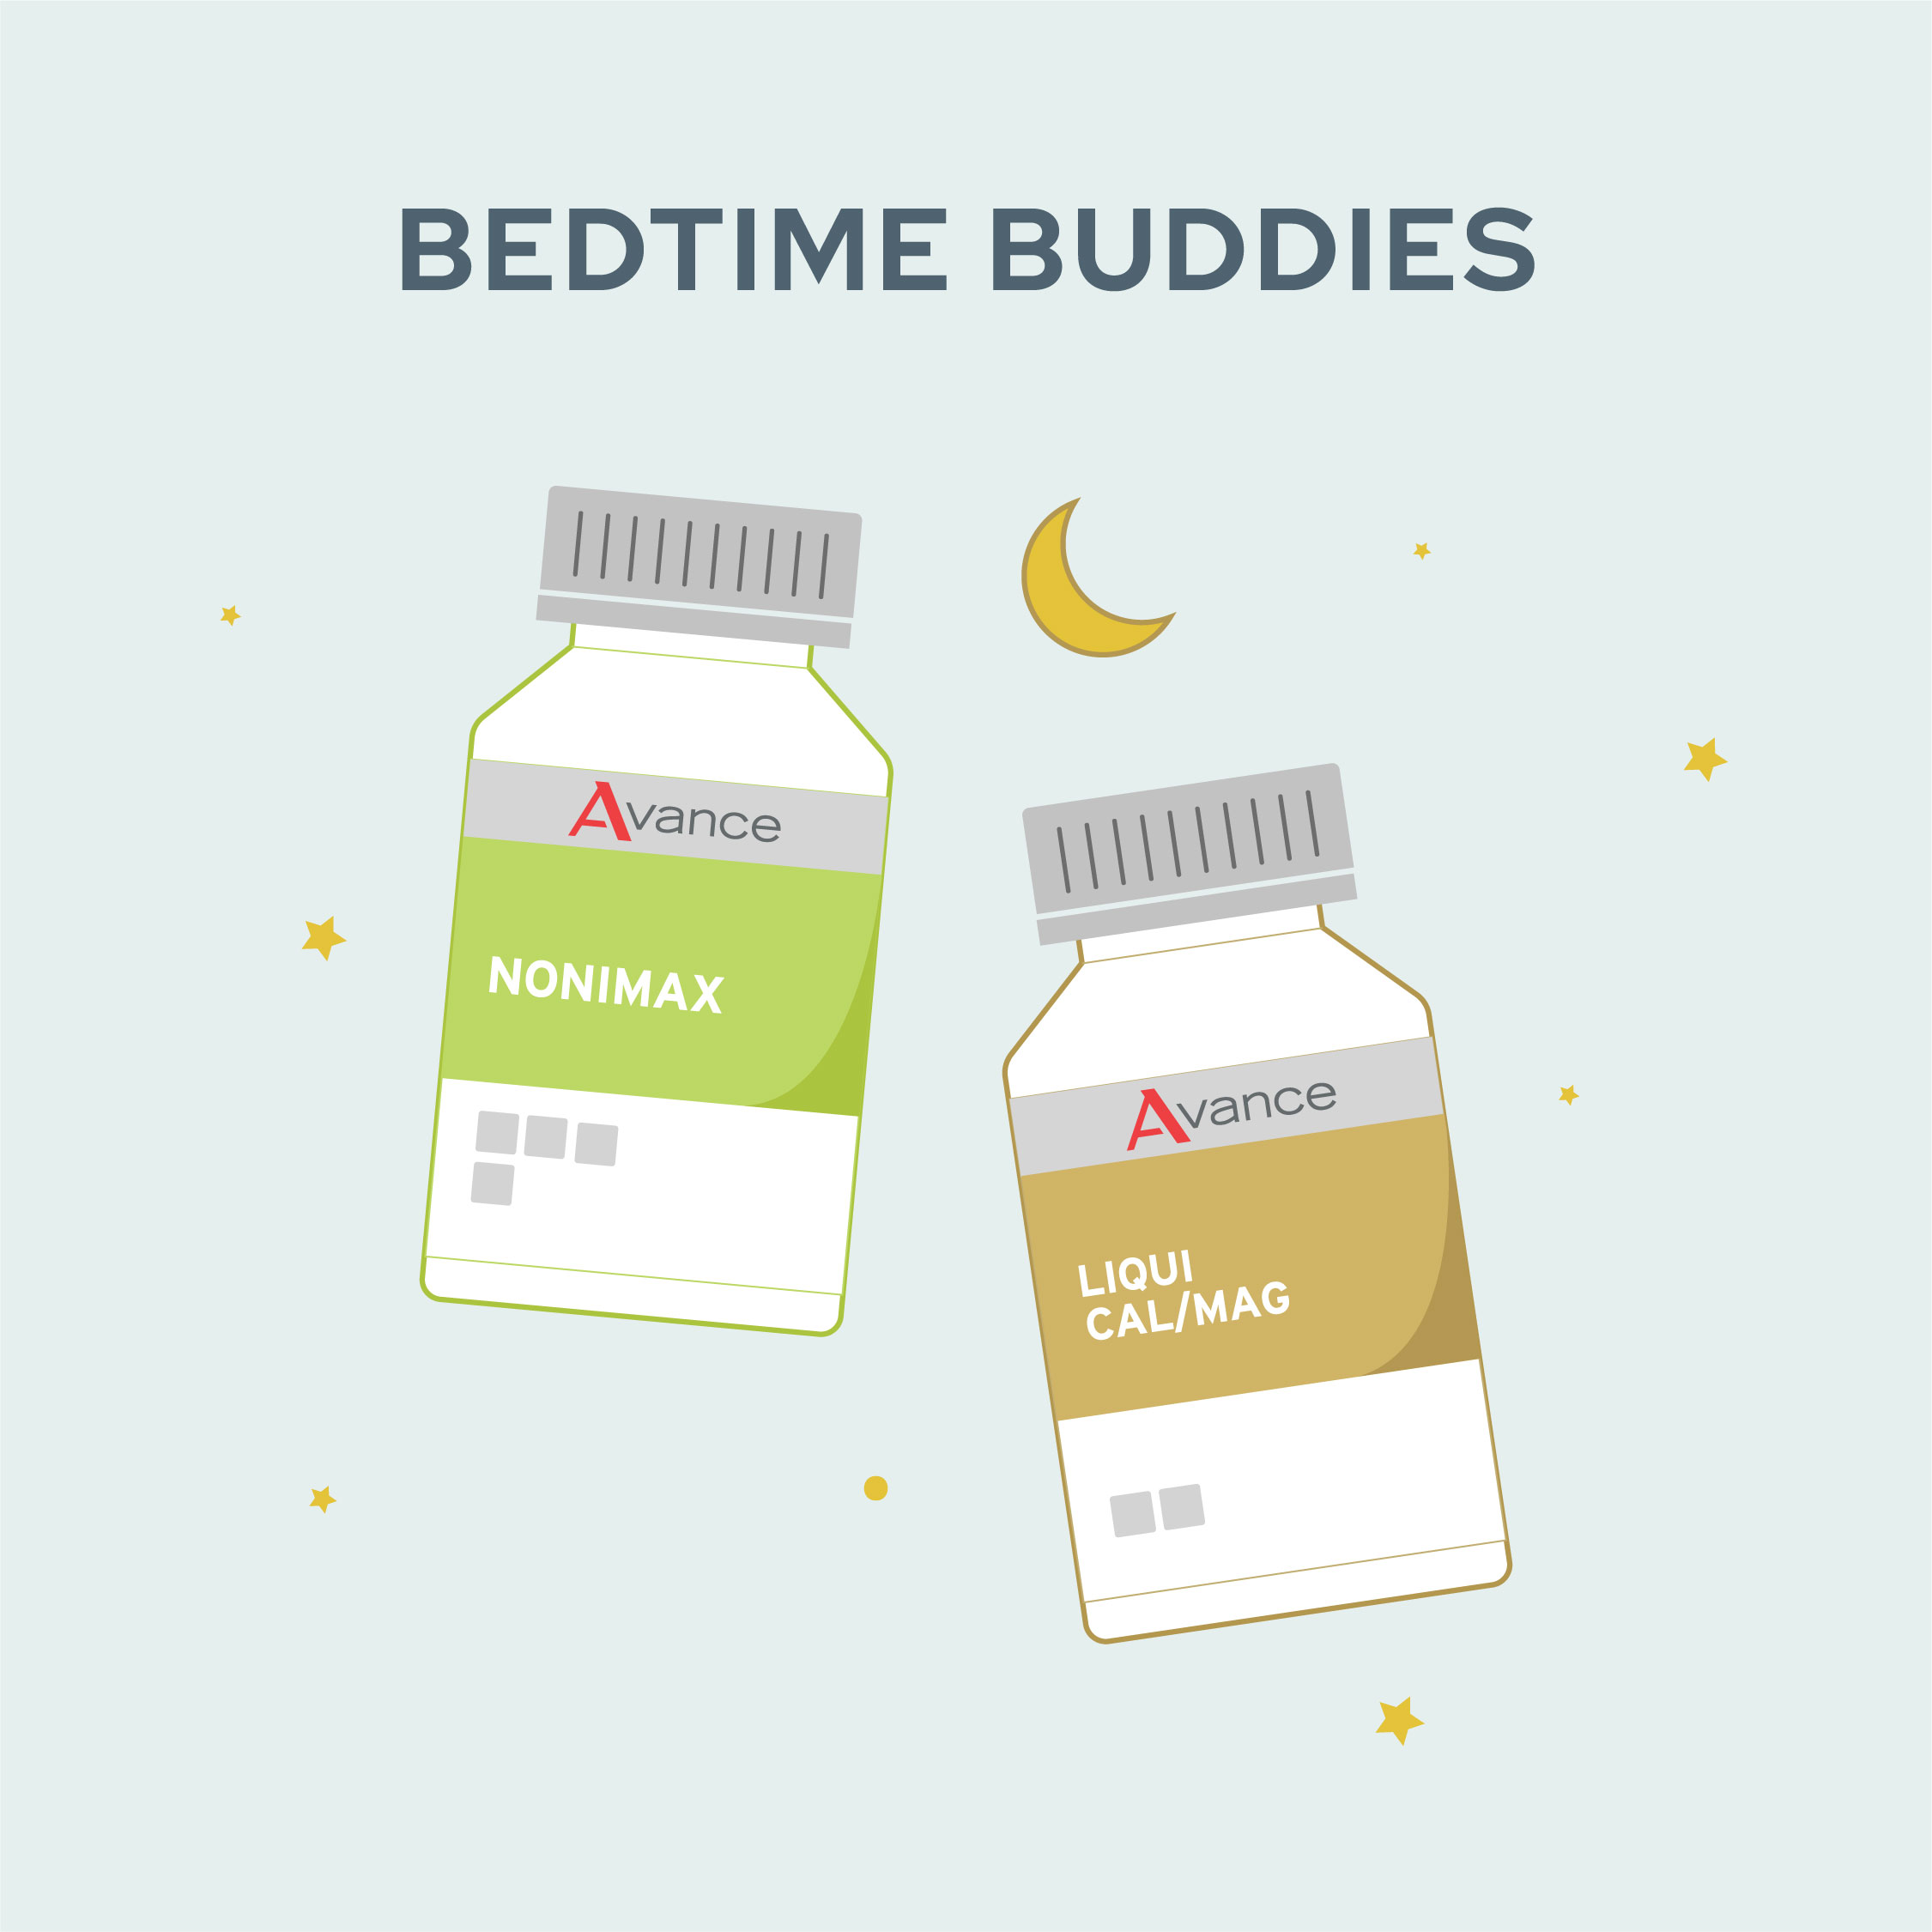 Bedtime Buddies Sleep Pack